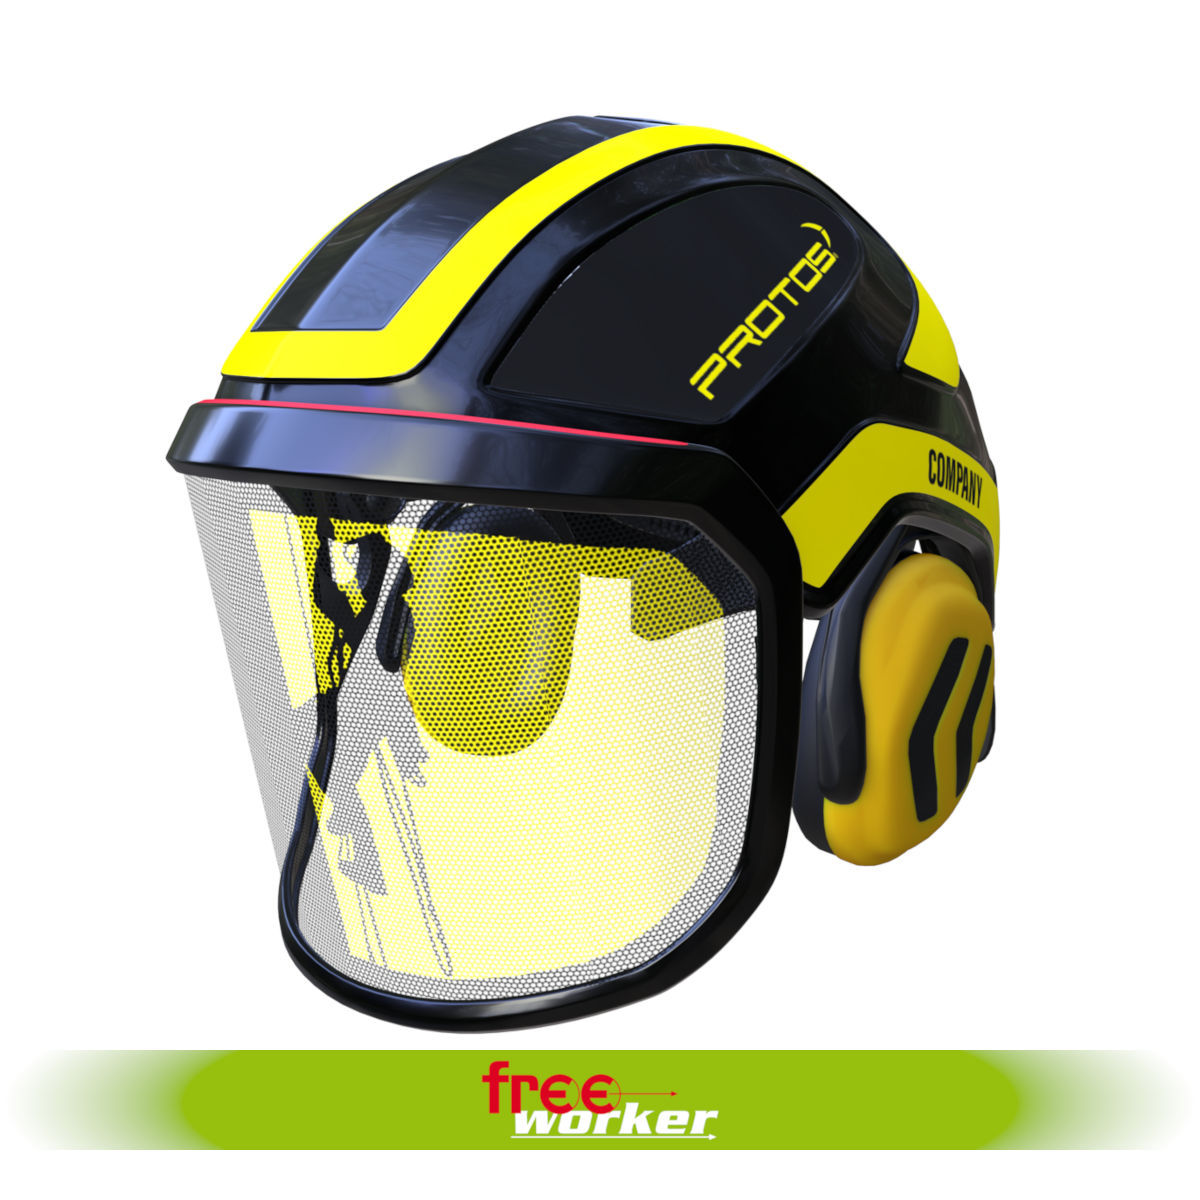 Protos® Integral Customer Edition with individual visor